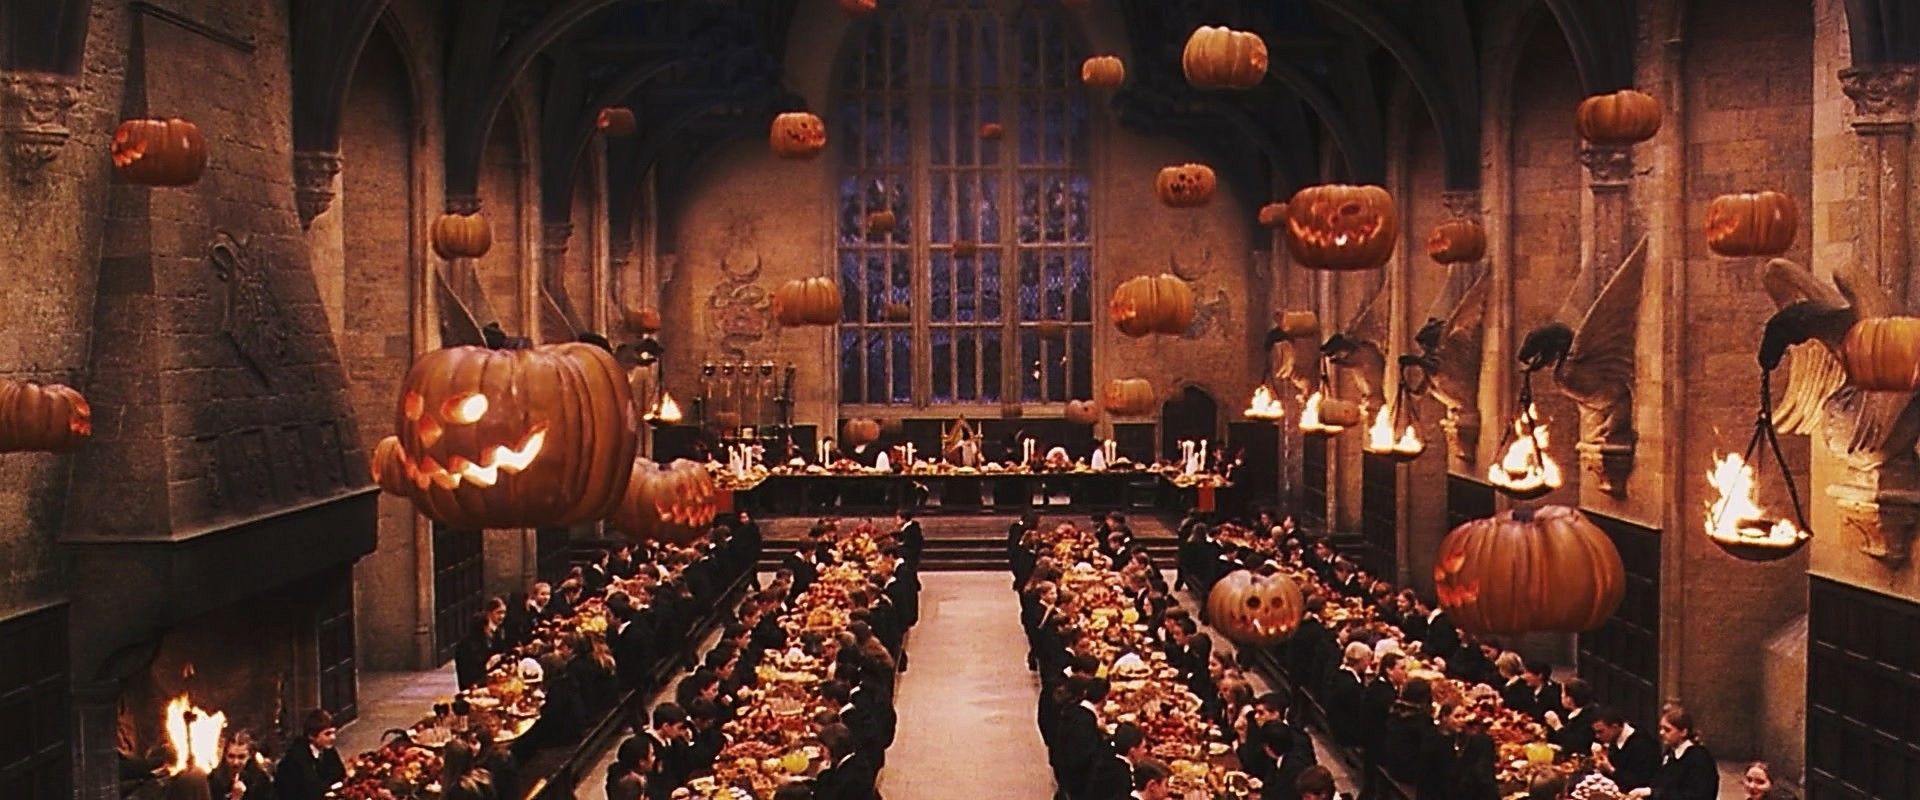 Harry Potter Halloween Wallpapers - Wallpaper Cave